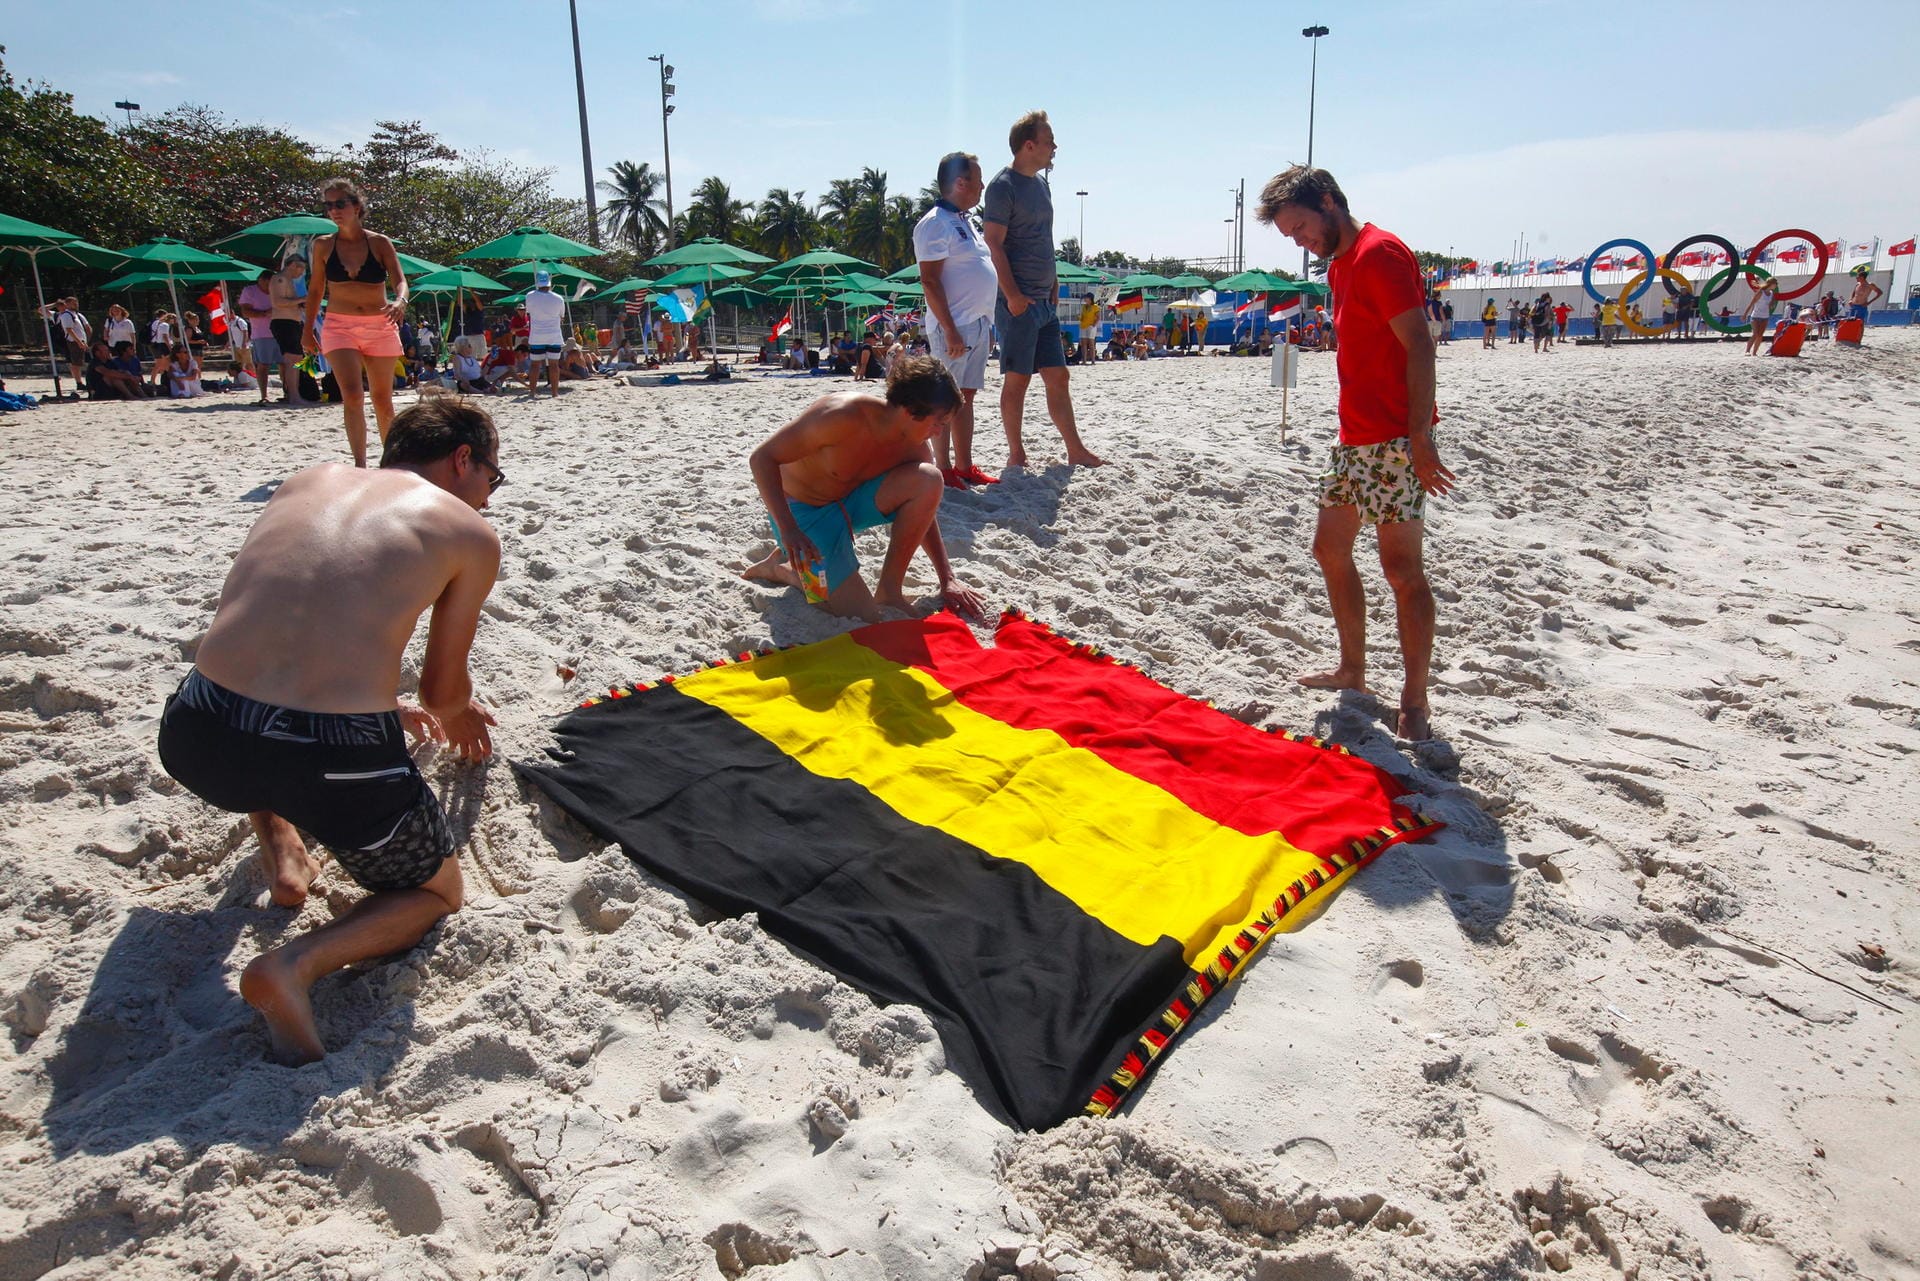 Flagge zeigen einmal anders: Belgische Fans breiten ihr Handtuch in den belgischen Nationalfarben am Strand von Rio aus. Grund dafür ist der Segelwettbewerb in der Laser-Bootsklasse mit der Belgierin Evi Van Acker.